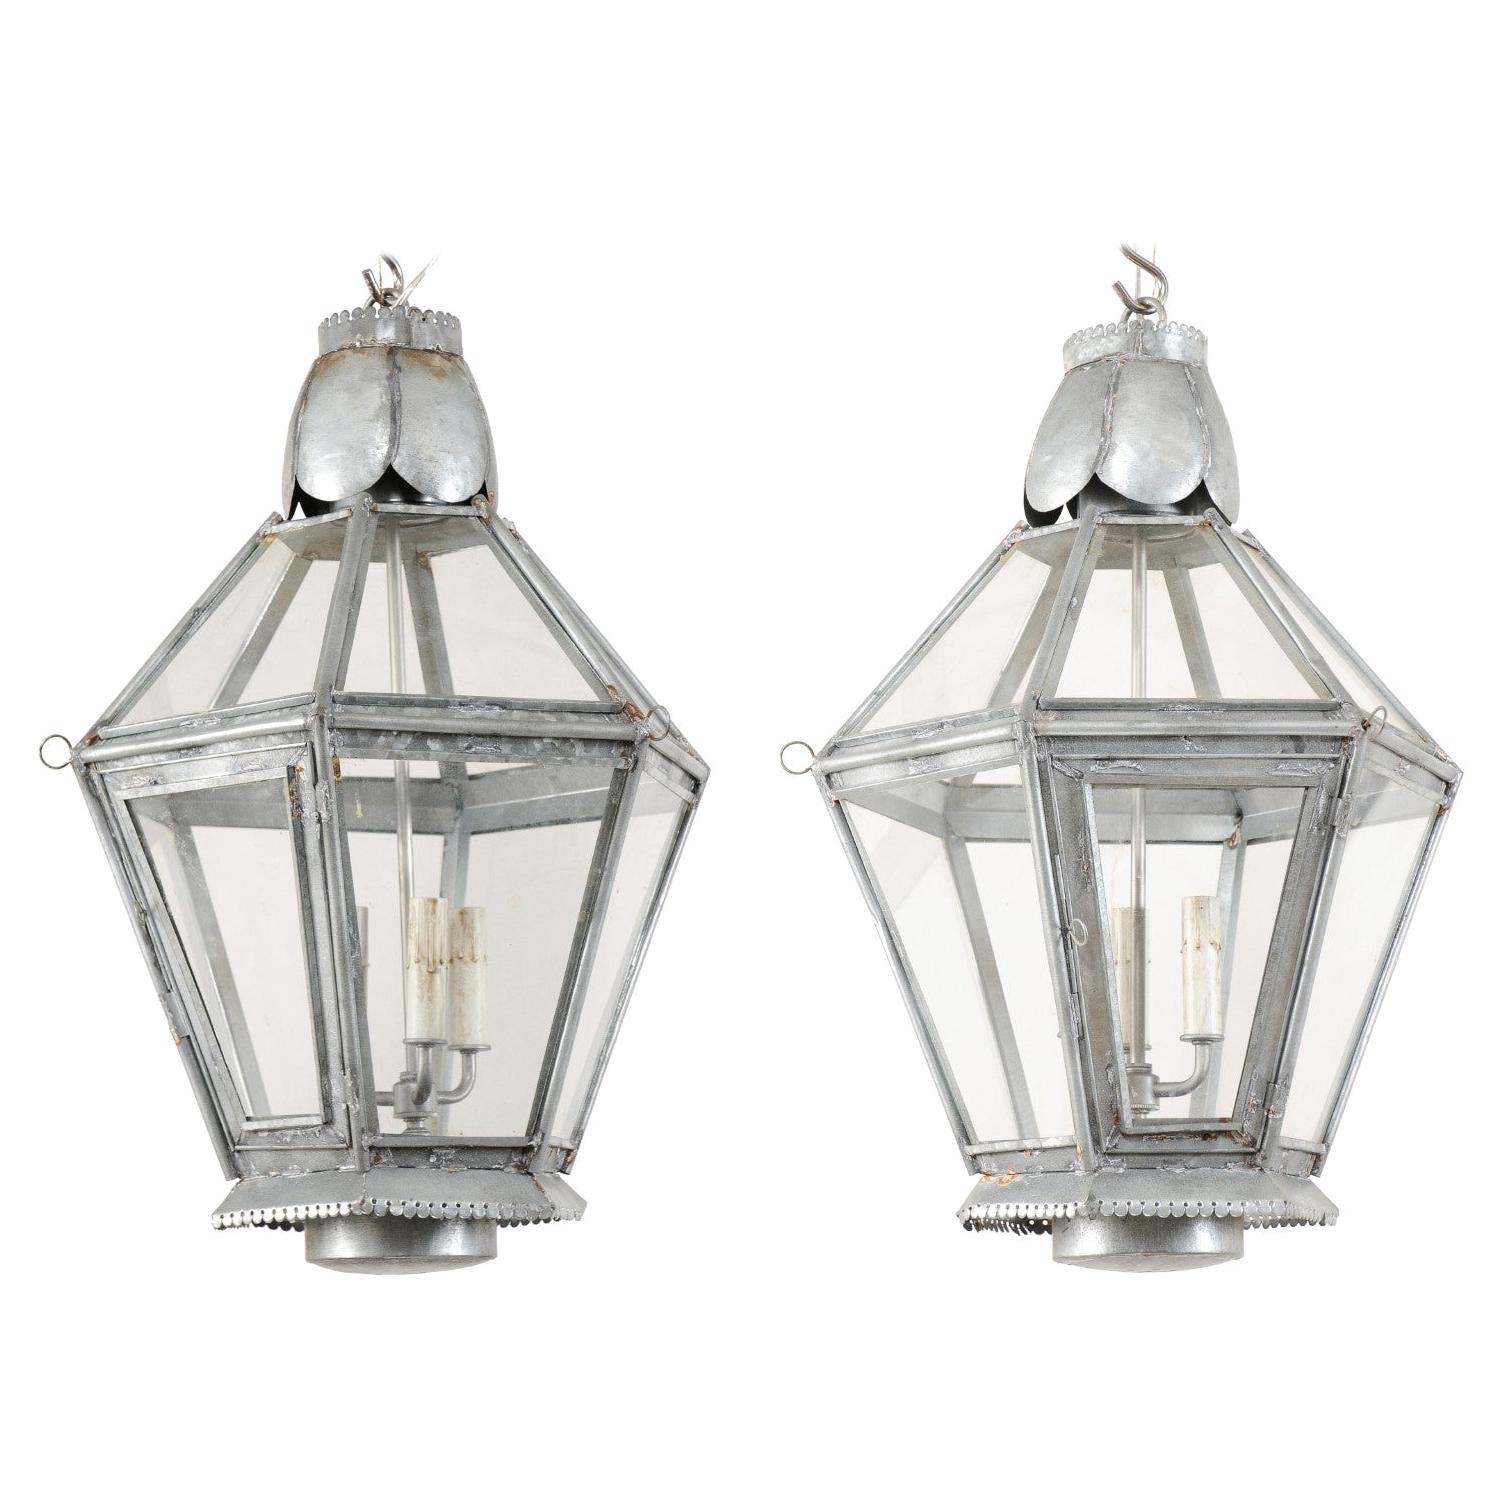 Pair of Vintage Silver Hanging Three-Light Lanterns